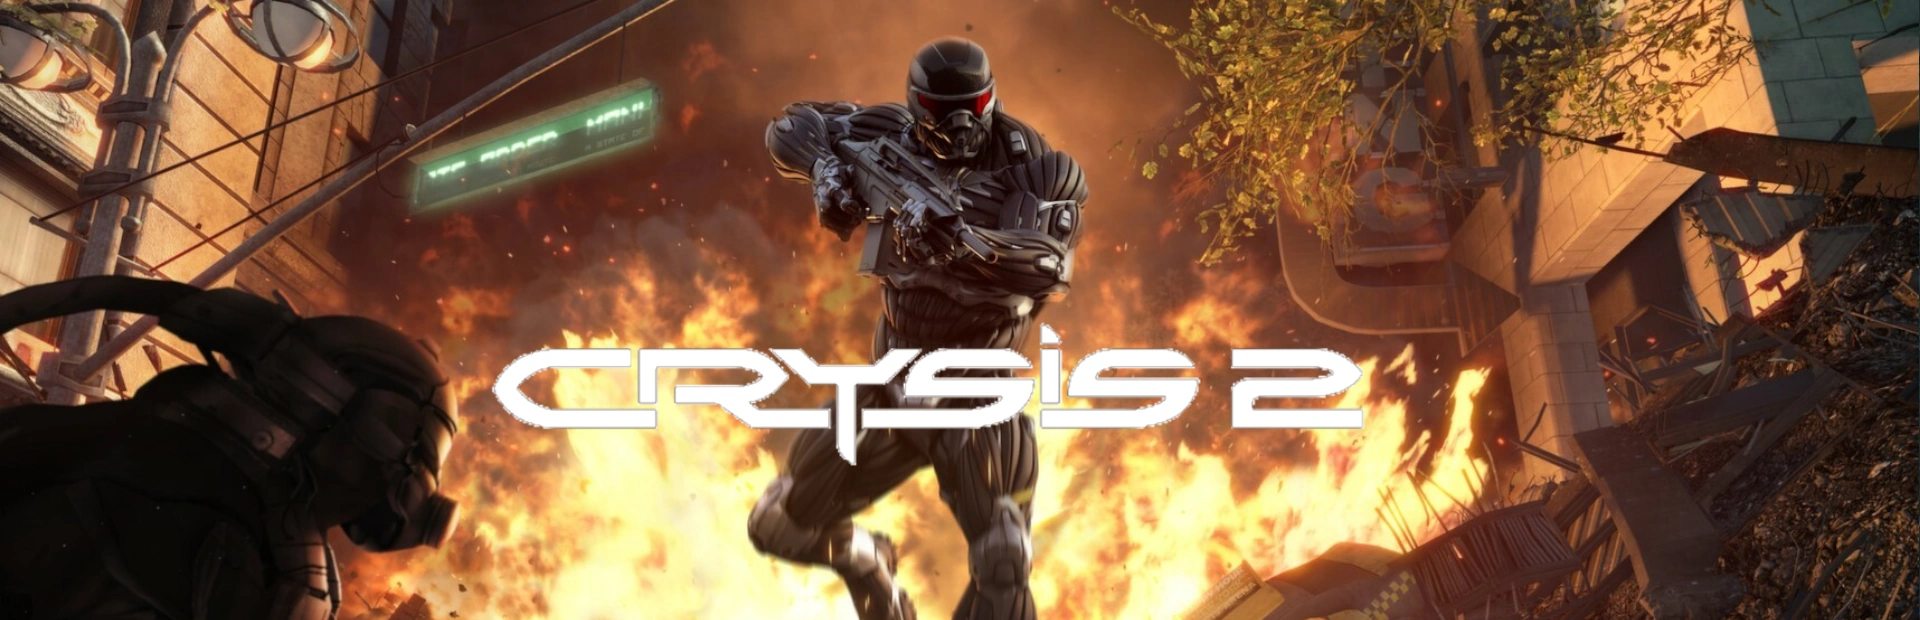 دانلود بازی Crysis 2 Remastered برای کامپیوتر | گیمباتو 